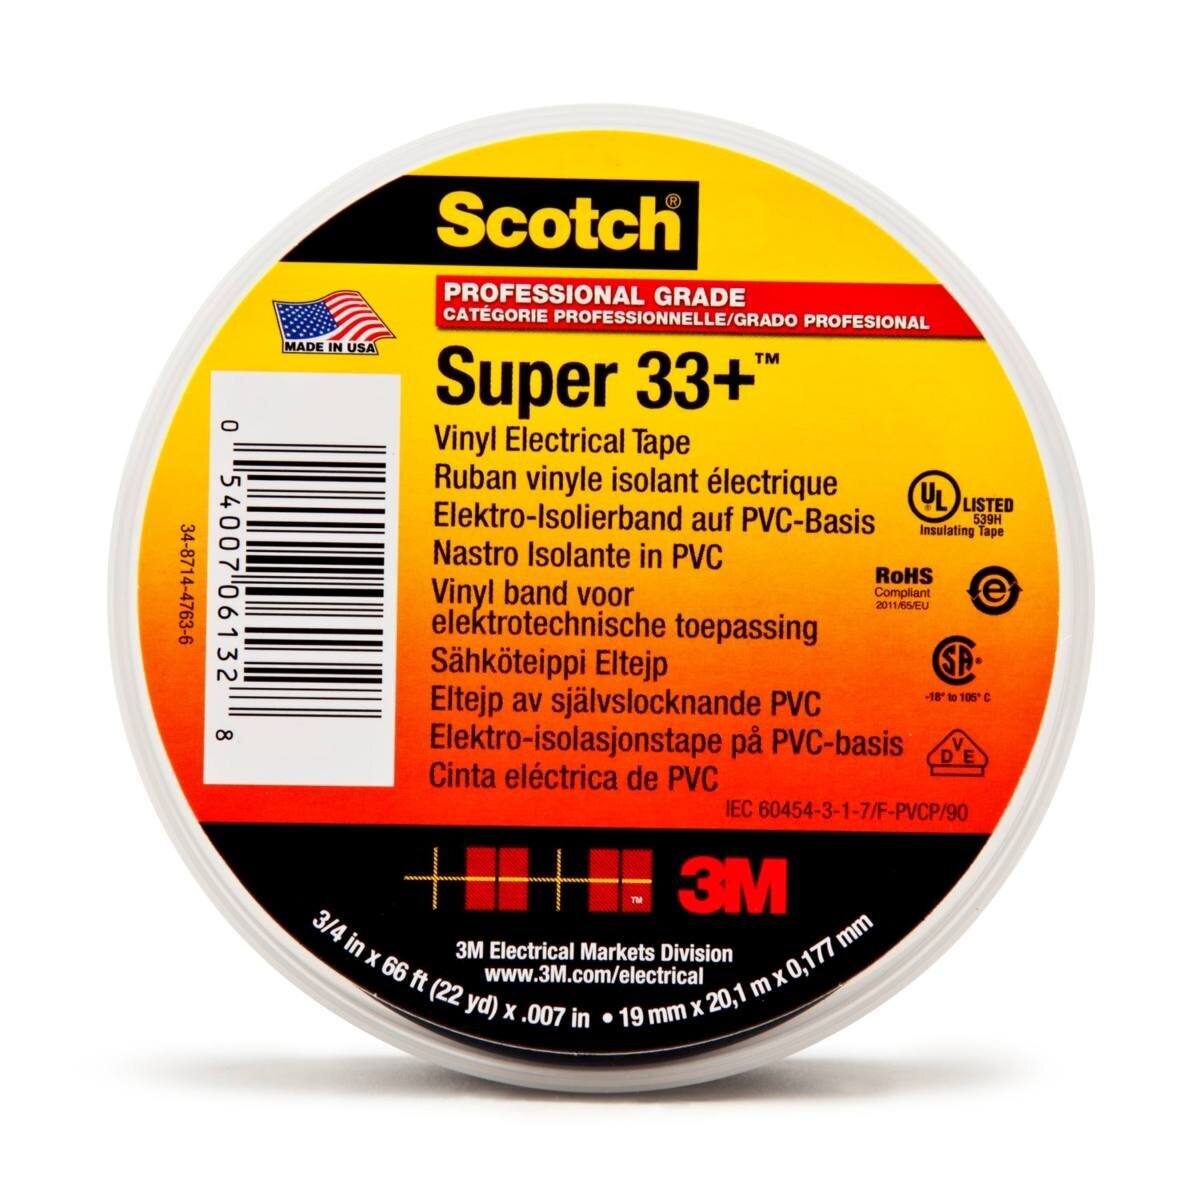 3M Scotch Super 33+ Vinyl Elektro-Isolierband, Schwarz, 19 mm x 6 m, 0,18 mm